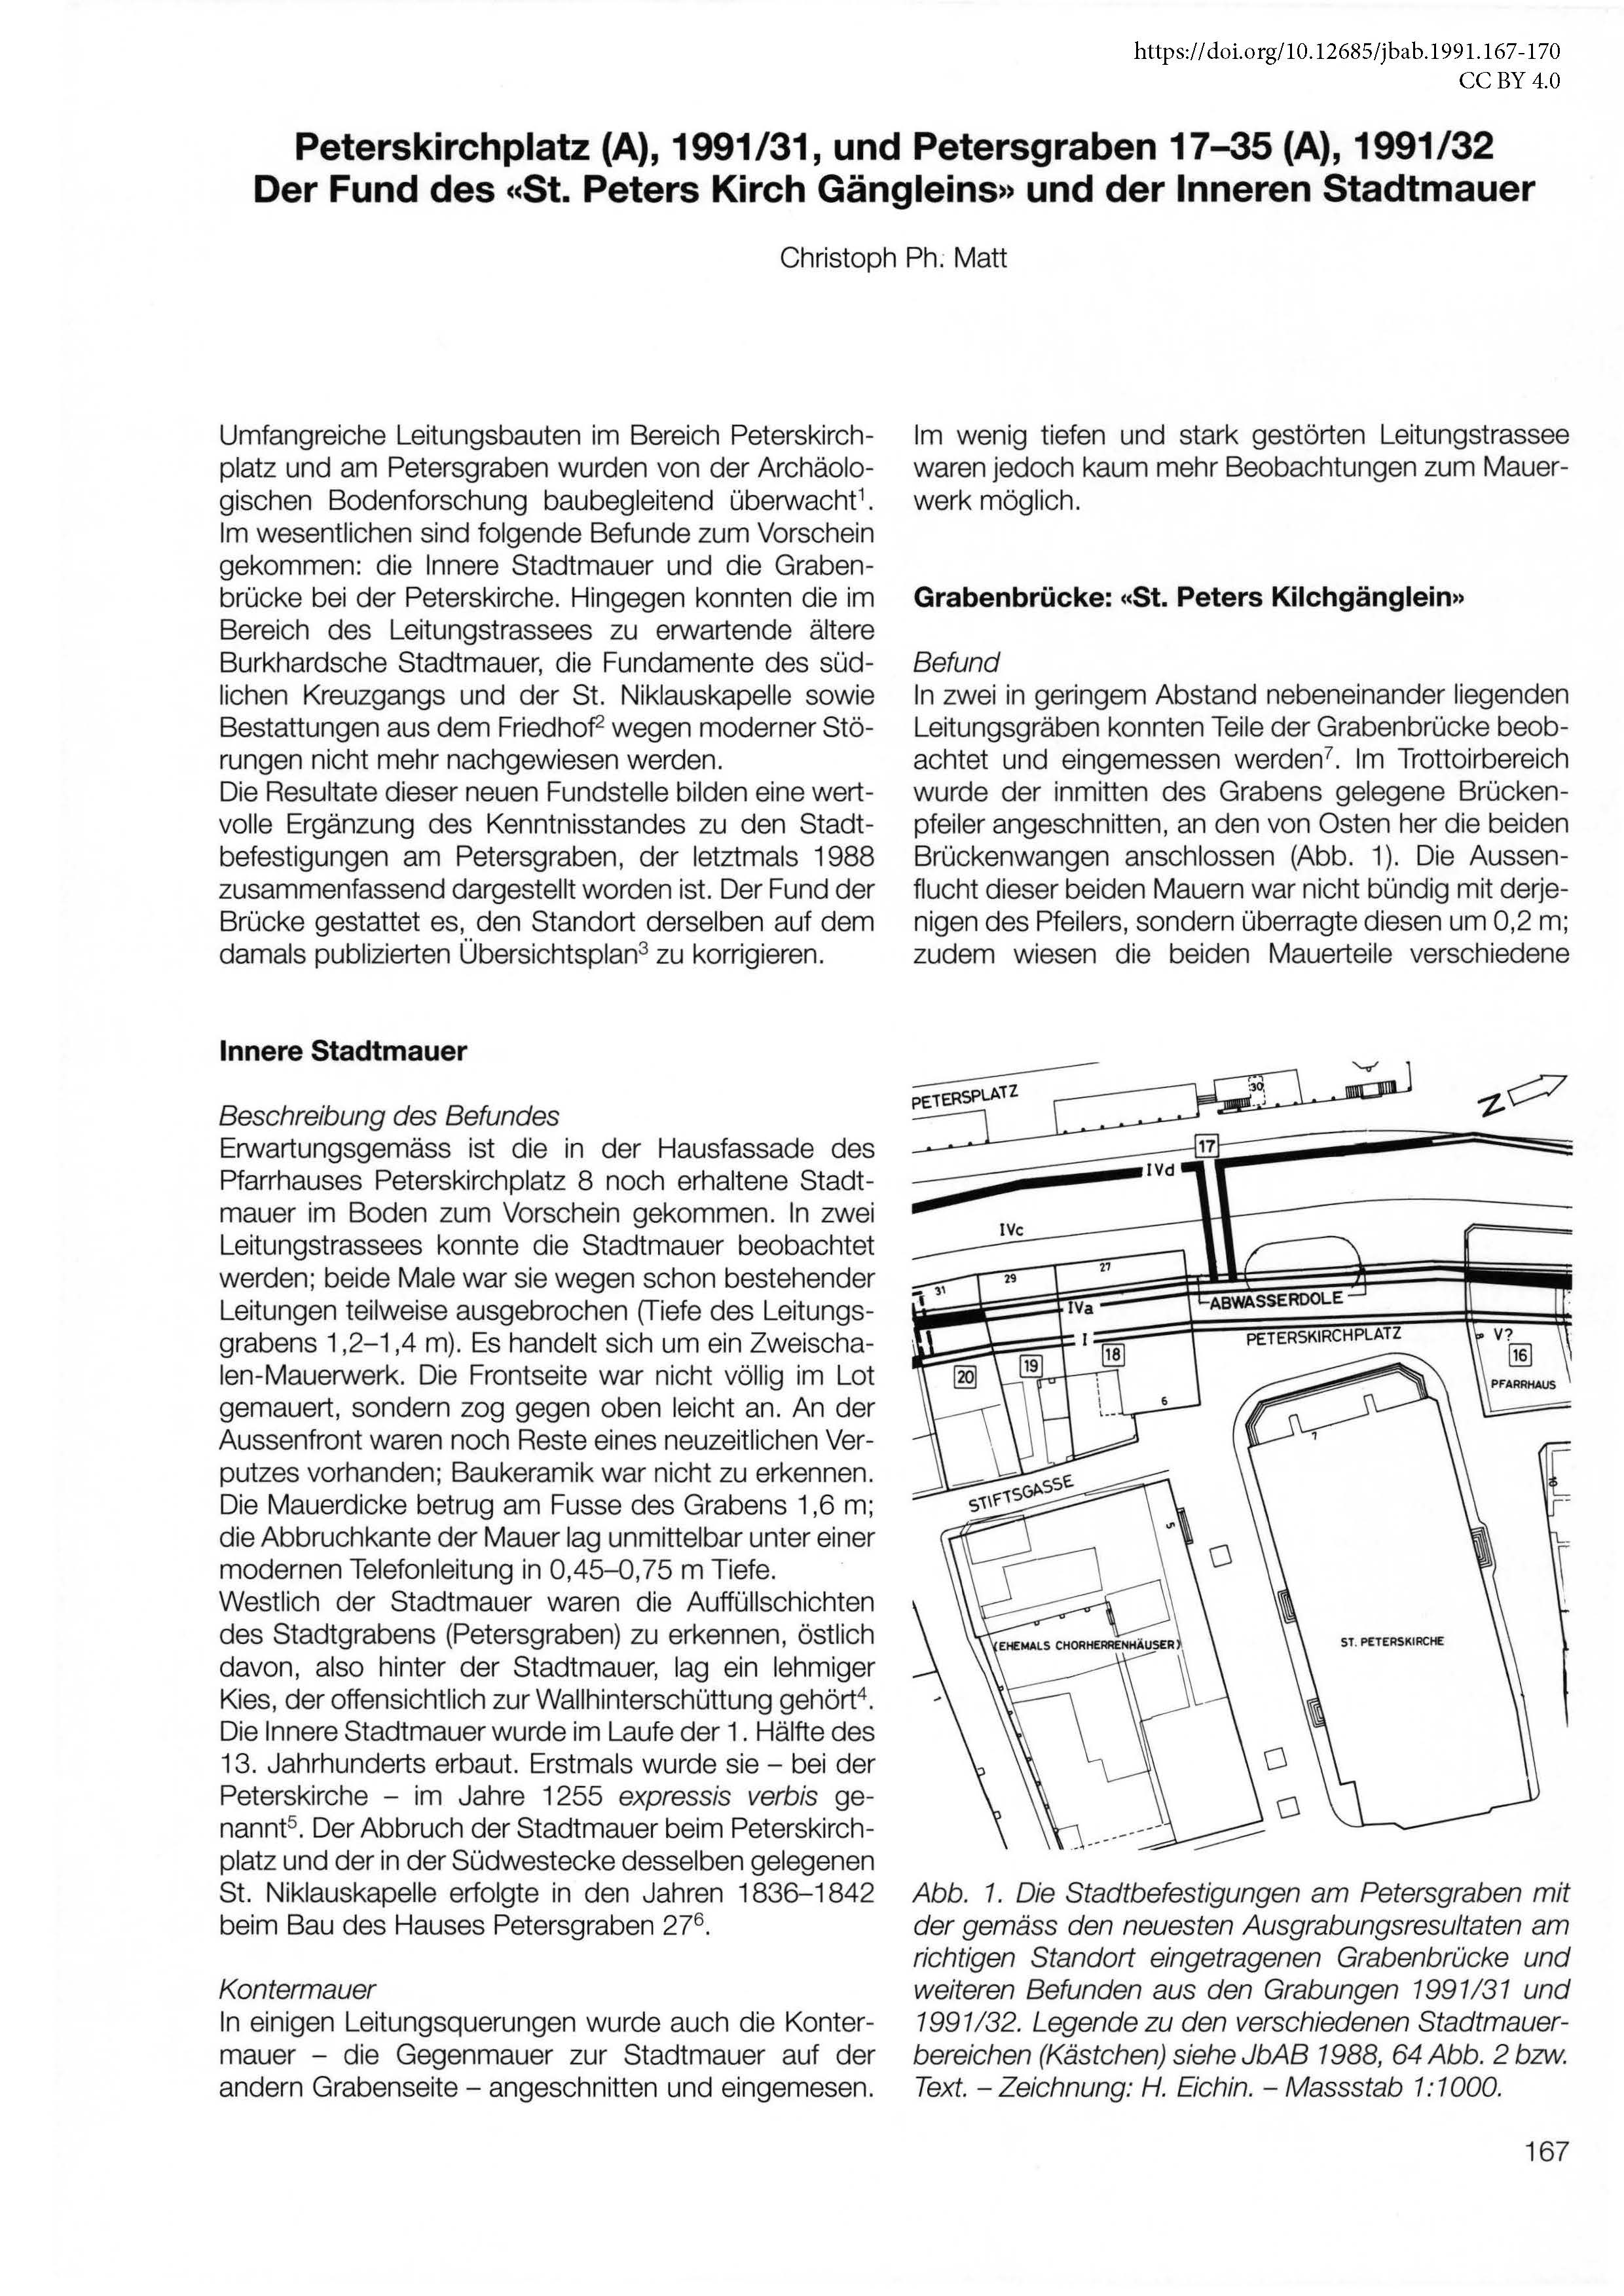 Erste Seite des Artikels zum Artikel über die Innere Stadtmauer am Petersgraben